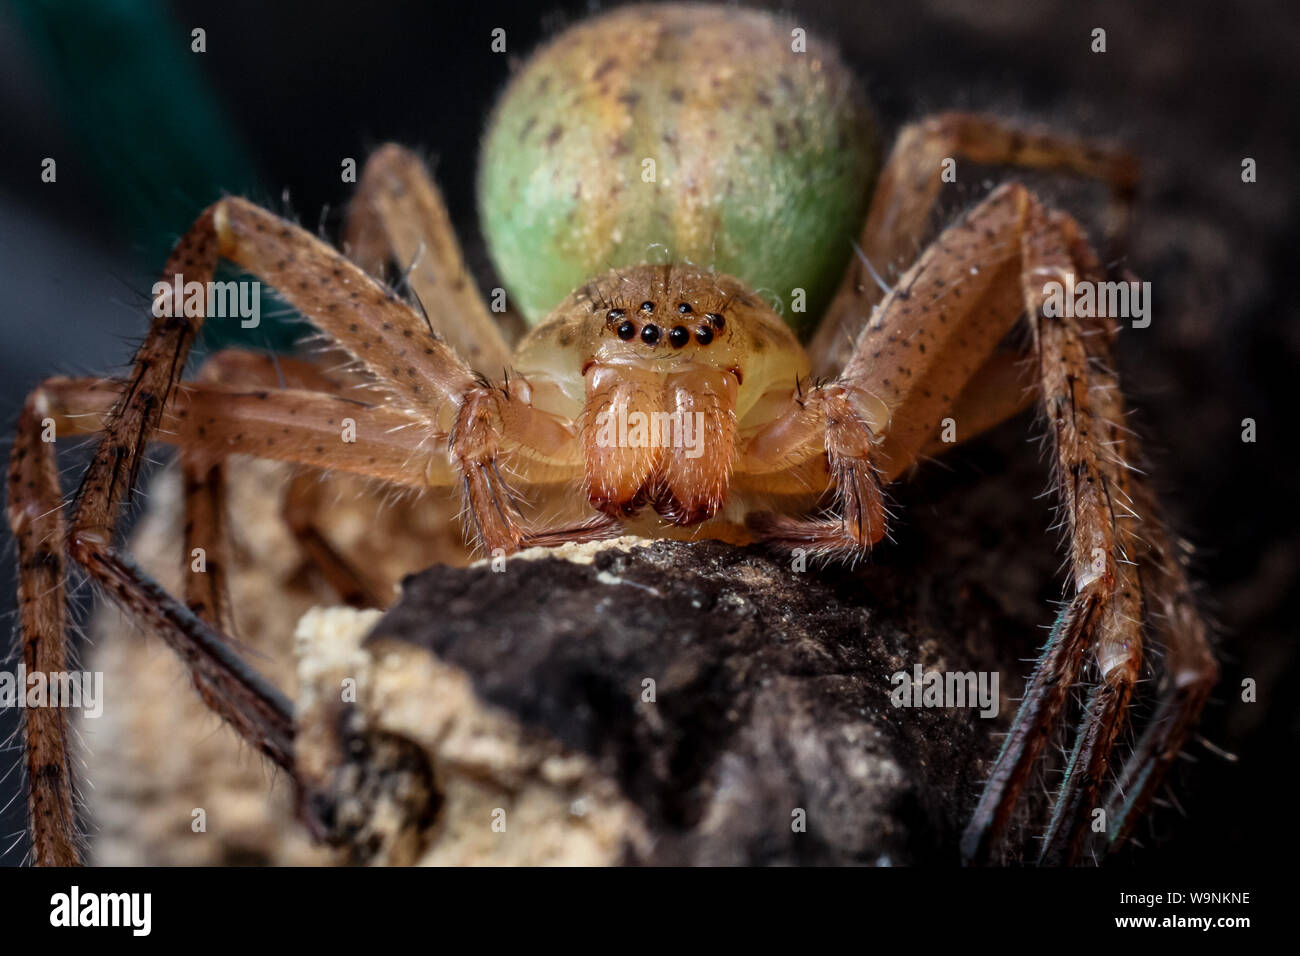 Araignée Huntsman avec corps colorés (Sparassidae) en close-up Banque D'Images